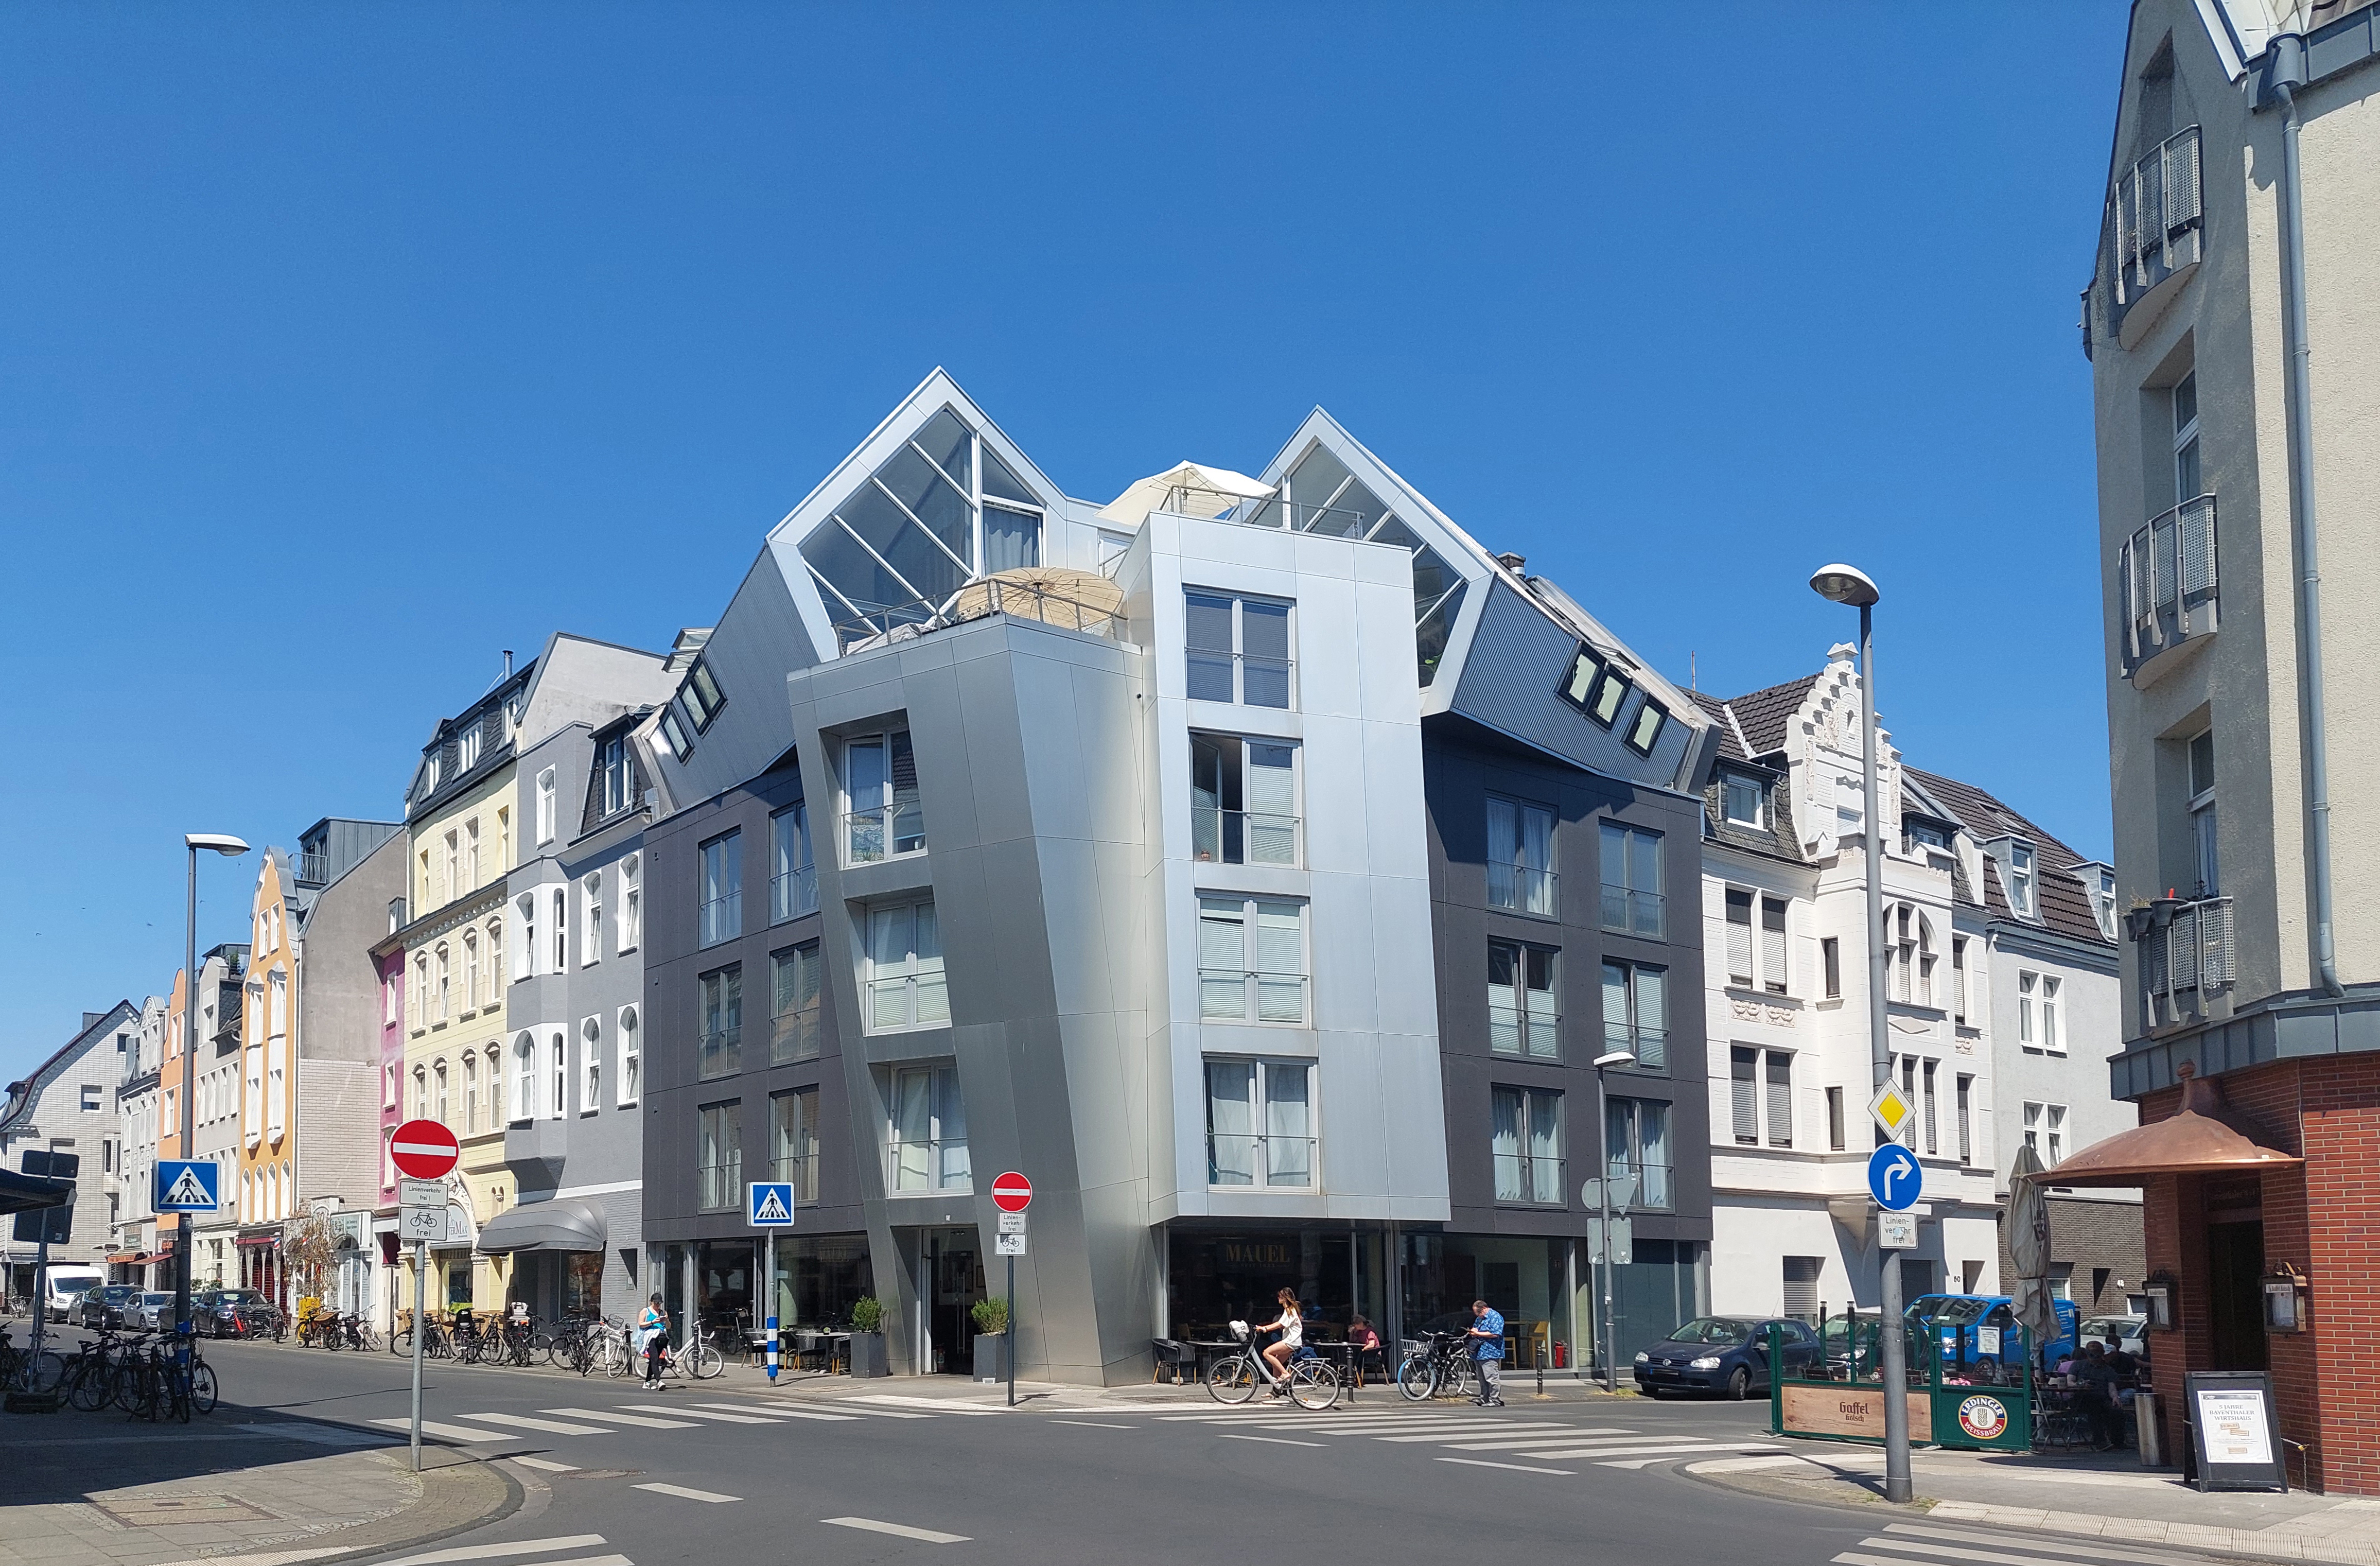 Sie suchen nach einem Immobilienmakler für Köln-Bayenthal der Ihr Haus oder Eigentumswohnung sicher und stressfrei verkaufen kann?